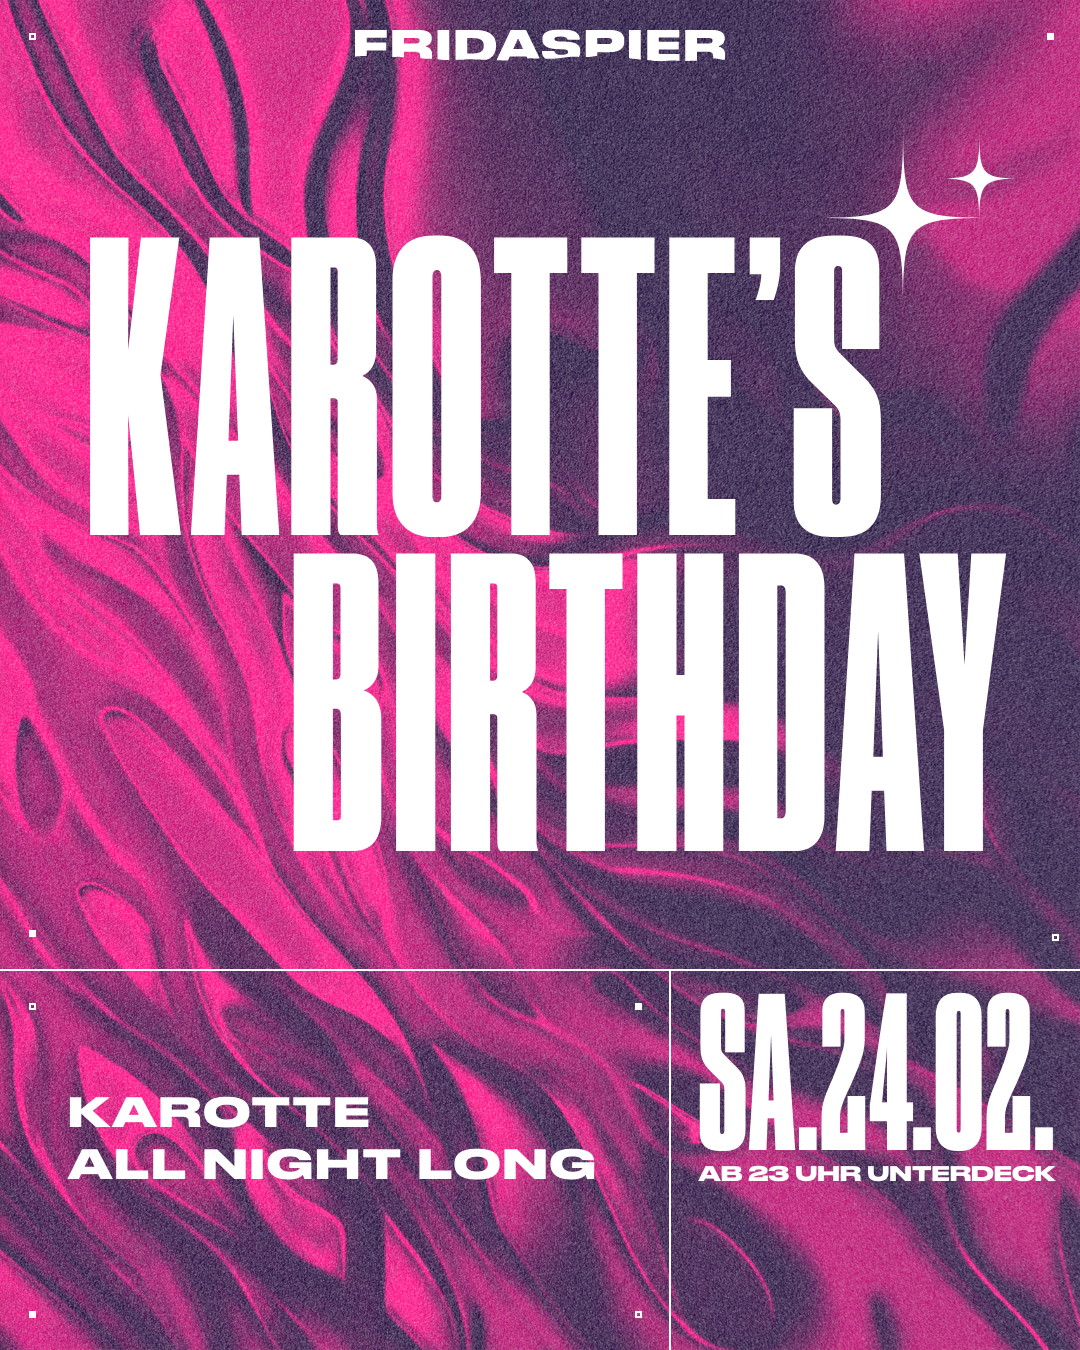 Karotte'S BIRTHDAY, Karotte ALL NIGHT LONG x Fridas Pier - フライヤー表